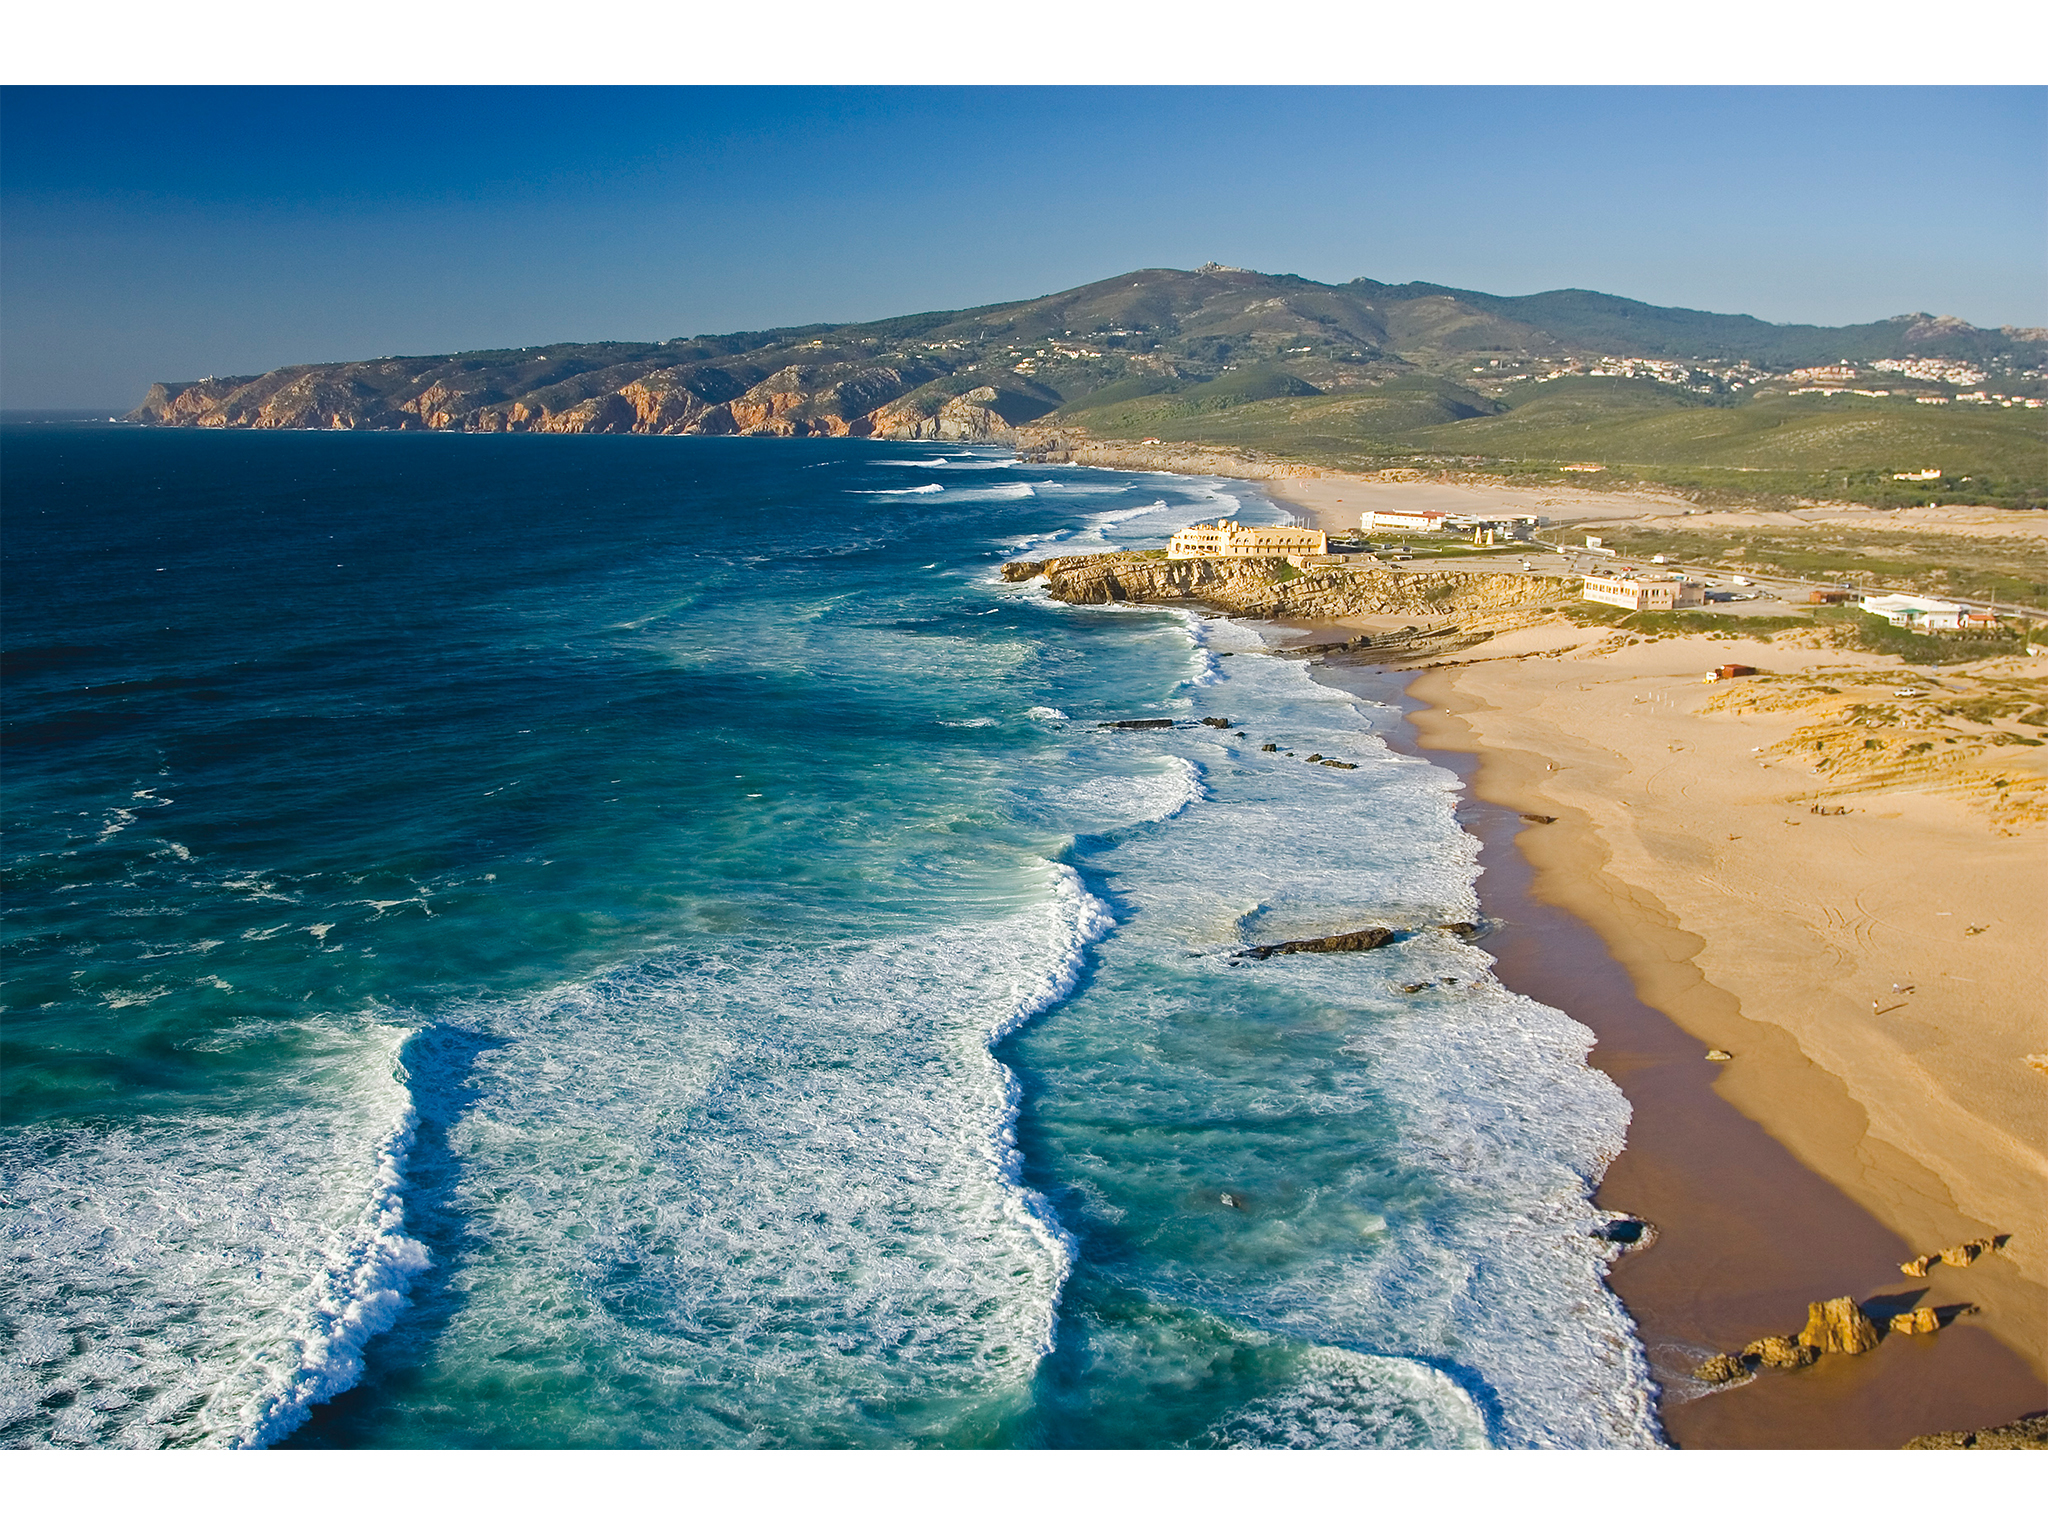 C coast. Пляж Гуинчо Португалия. Пляж Гиншу Португалия. Португалия побережье Атлантического океана. Португалия Лиссабонская Ривьера.